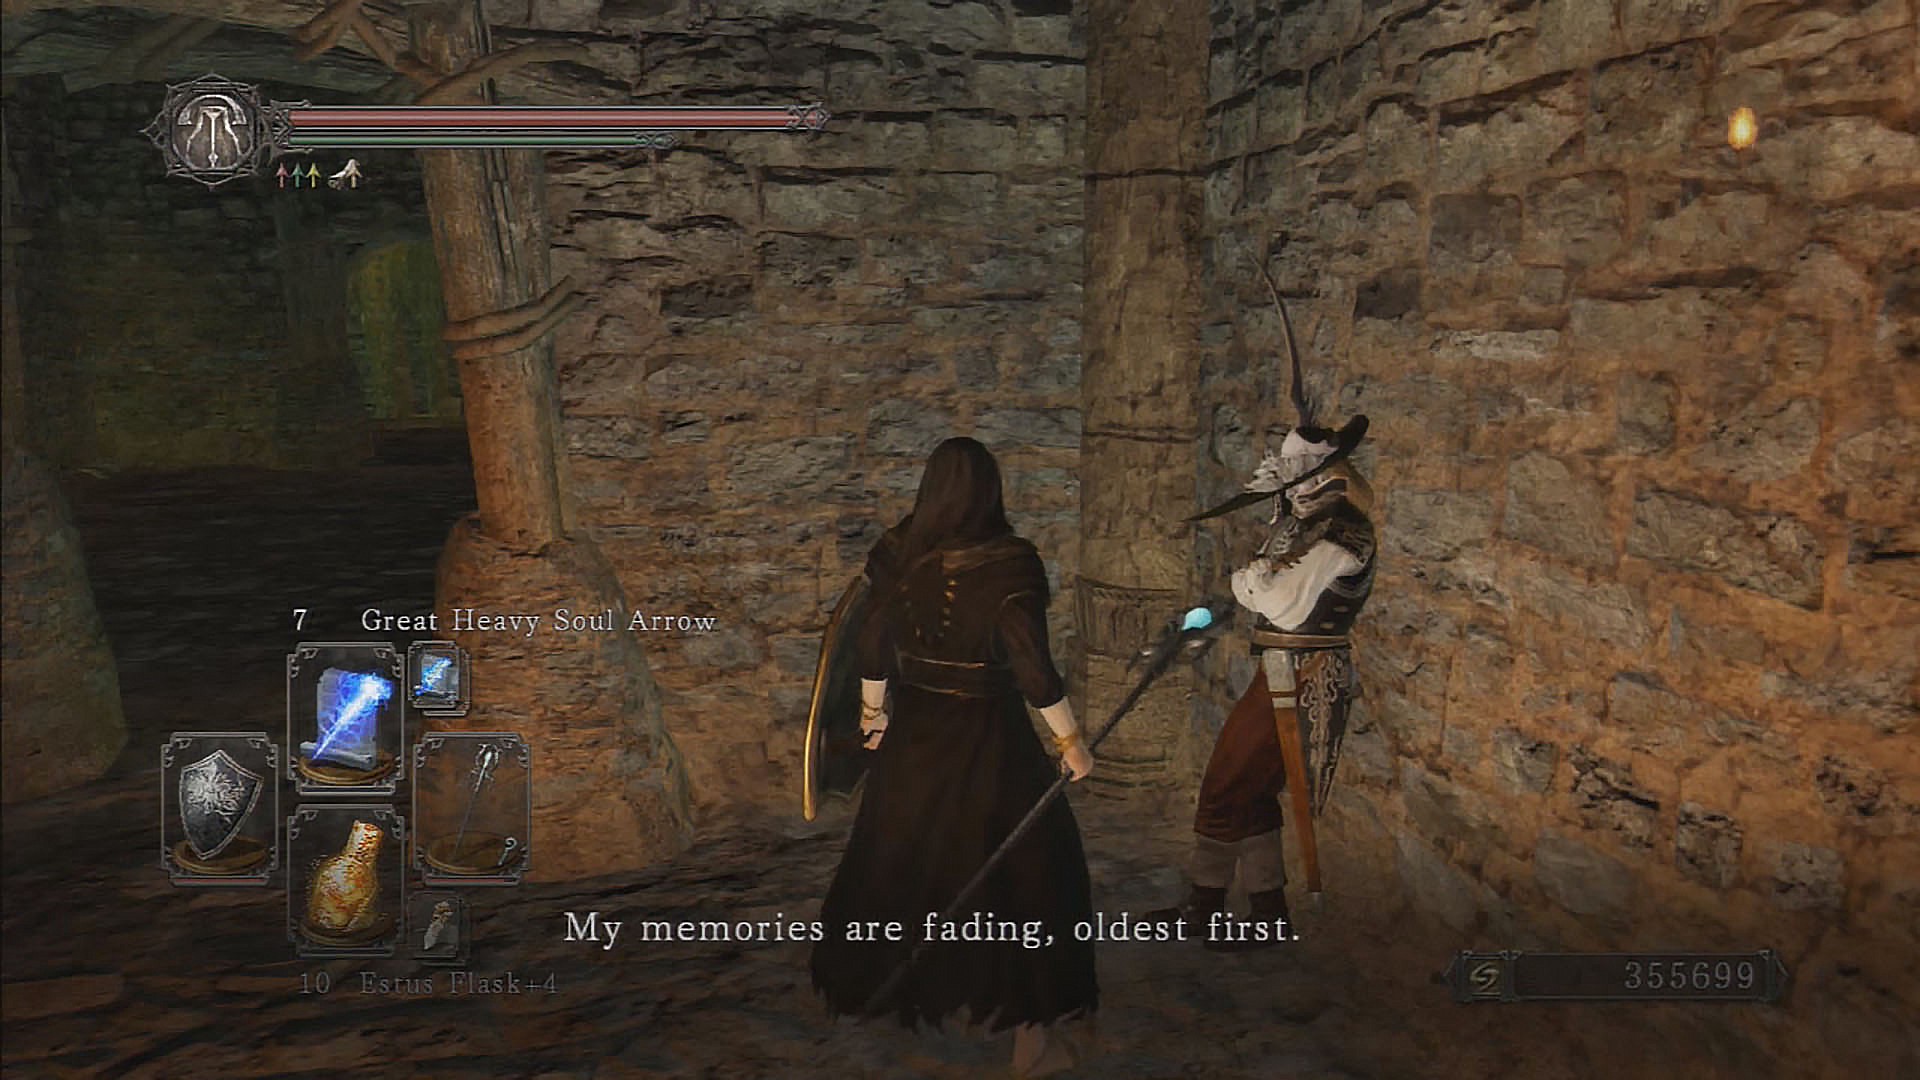 Cena de Dark Souls 2 em um diálogo com a personagem Lucatiel